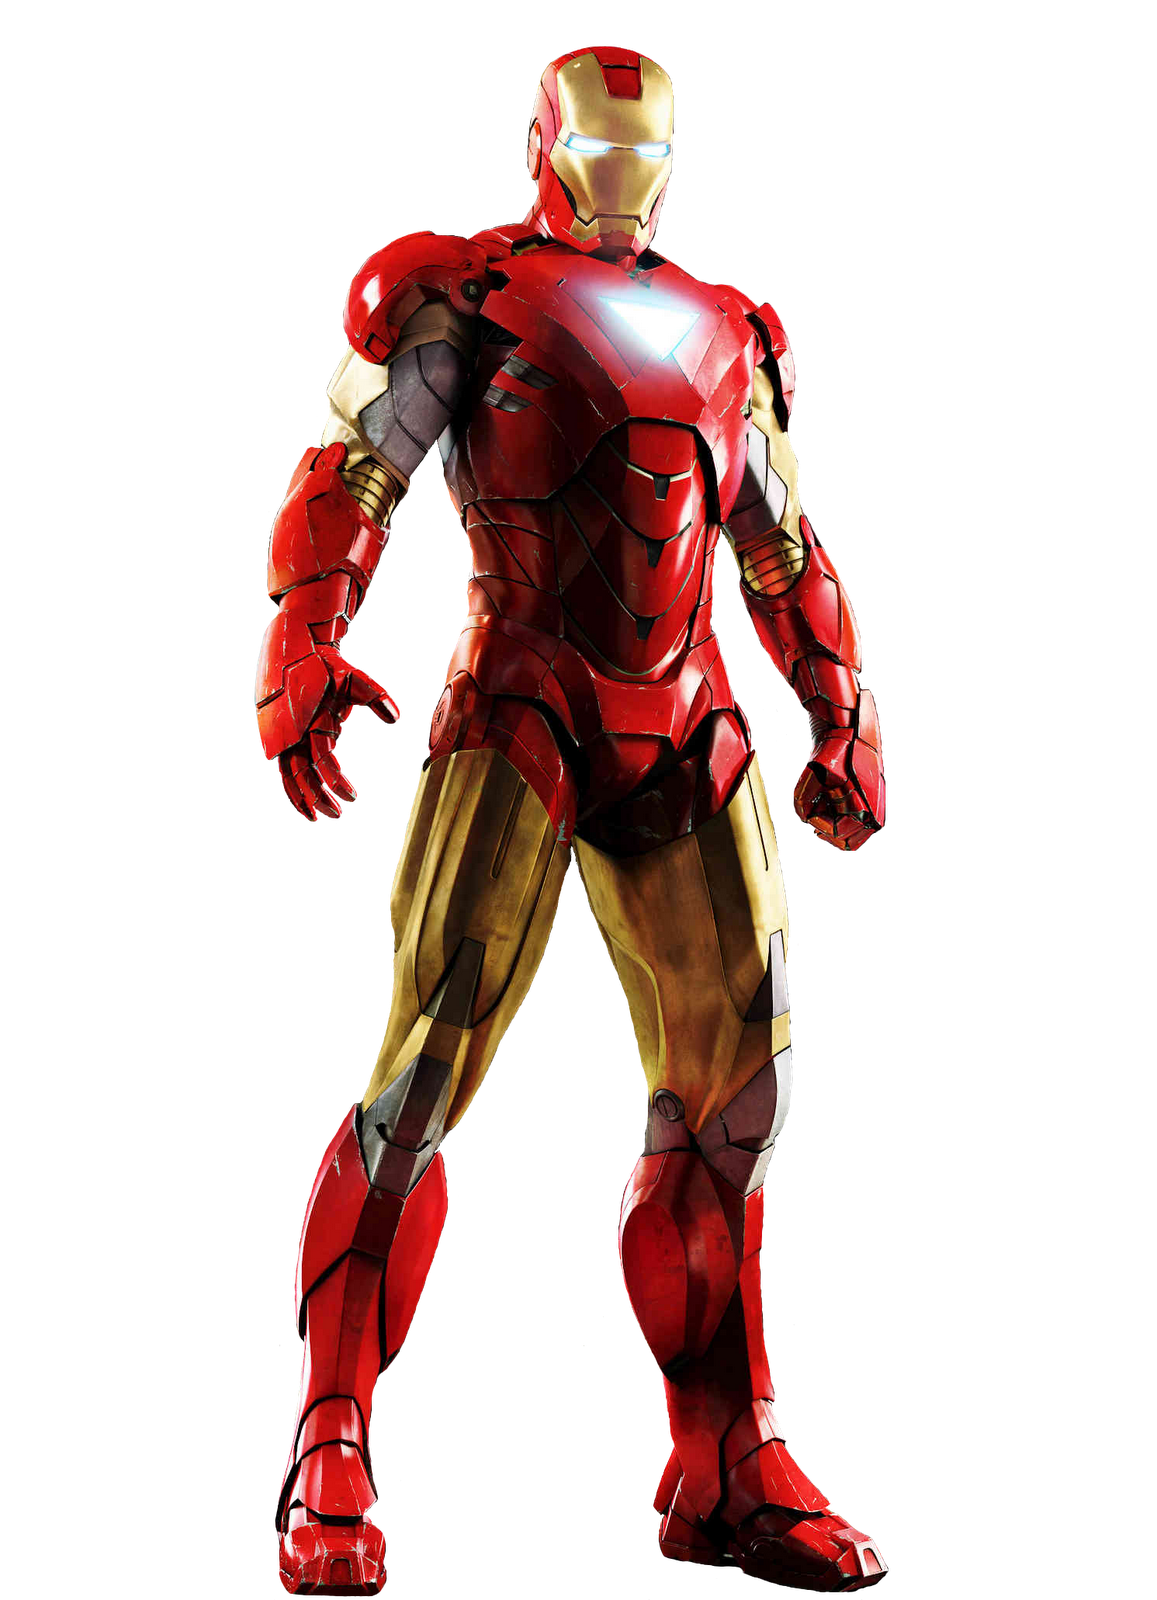 Iron Man Image PNG Image